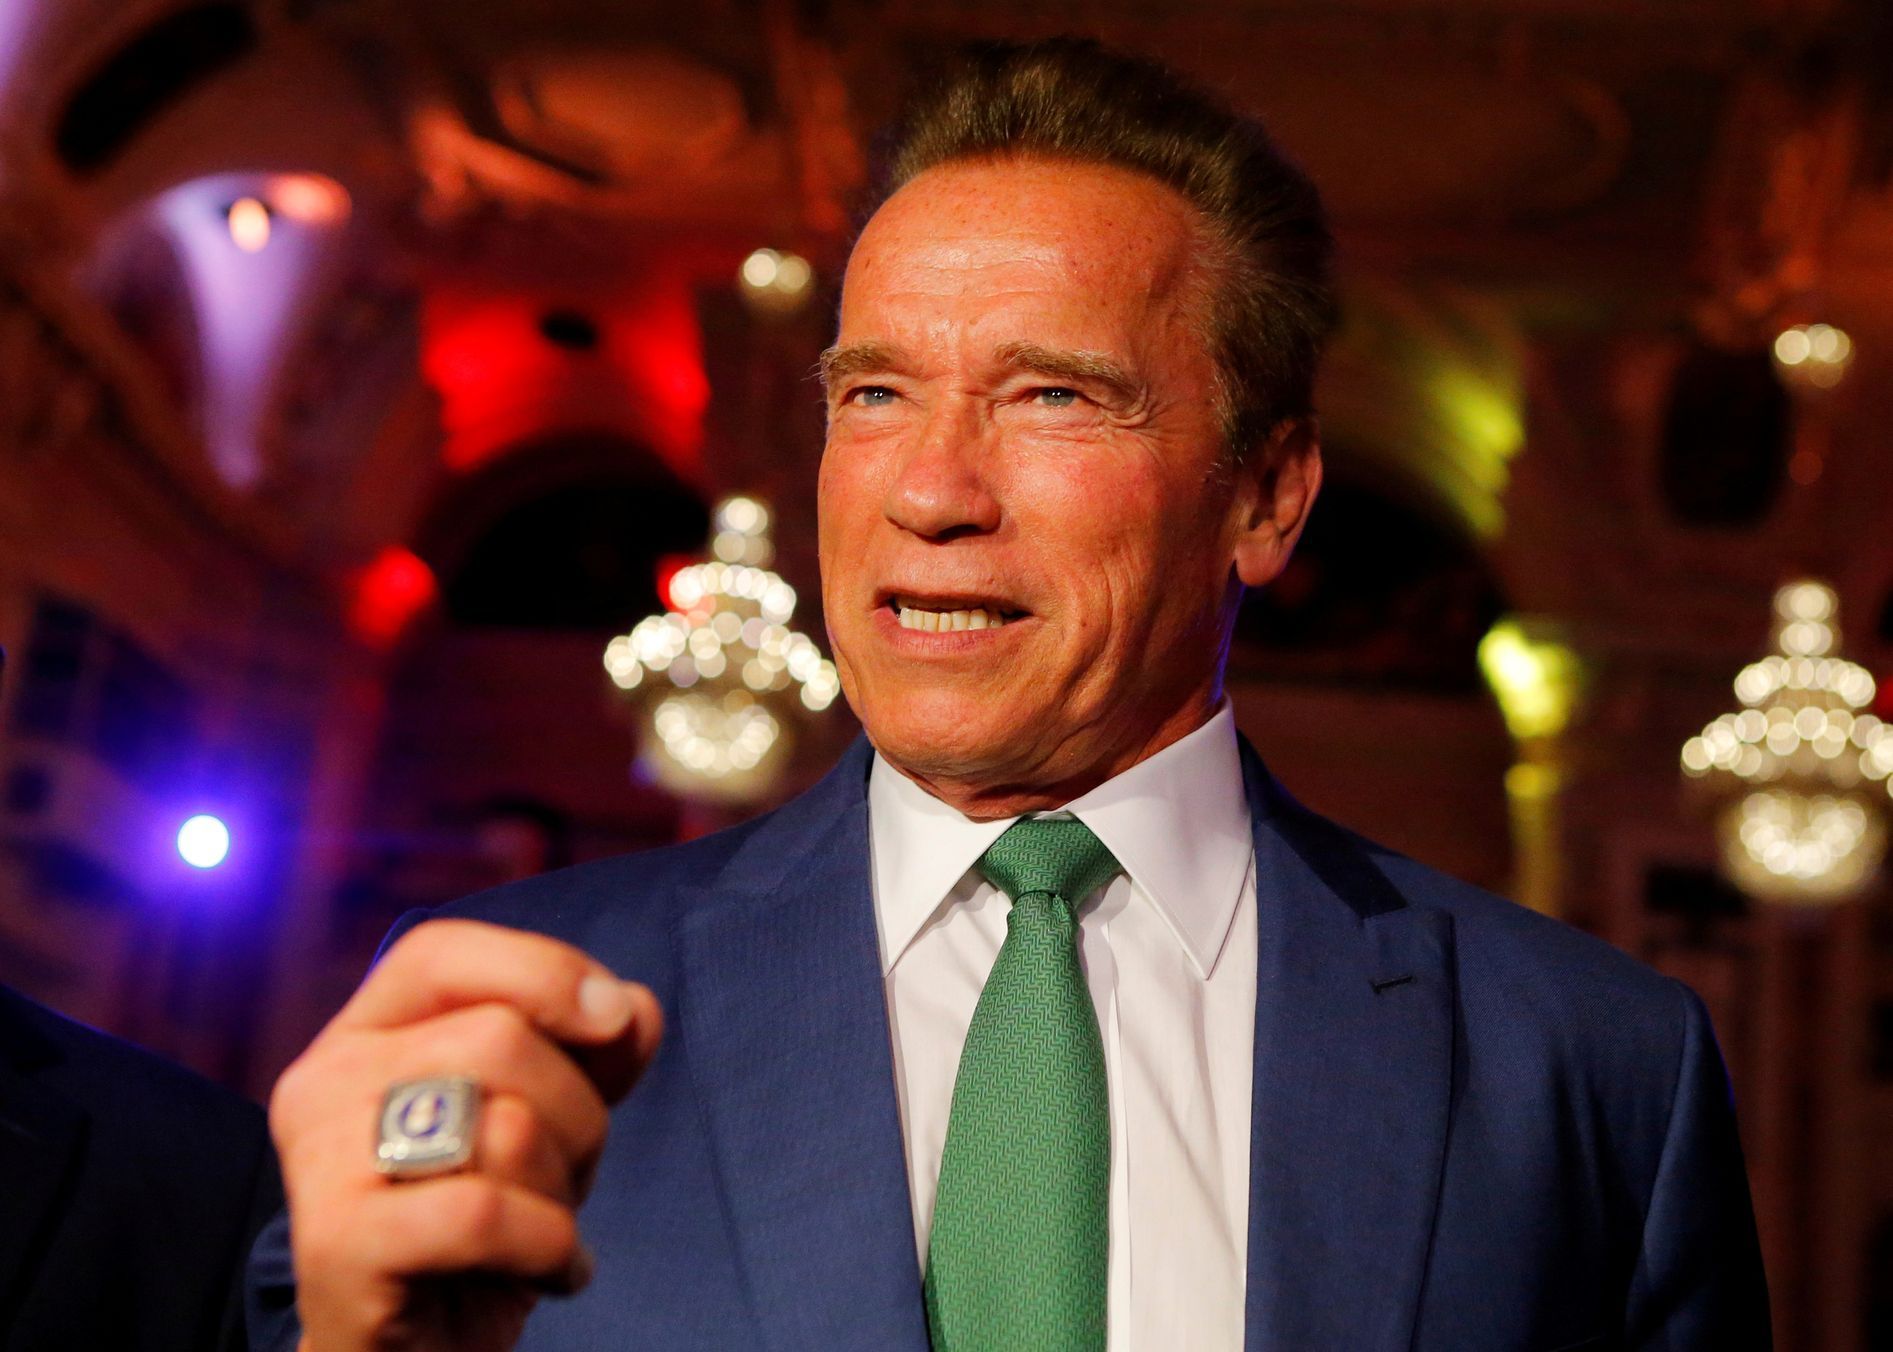 Arnold Schwarzenegger 2017